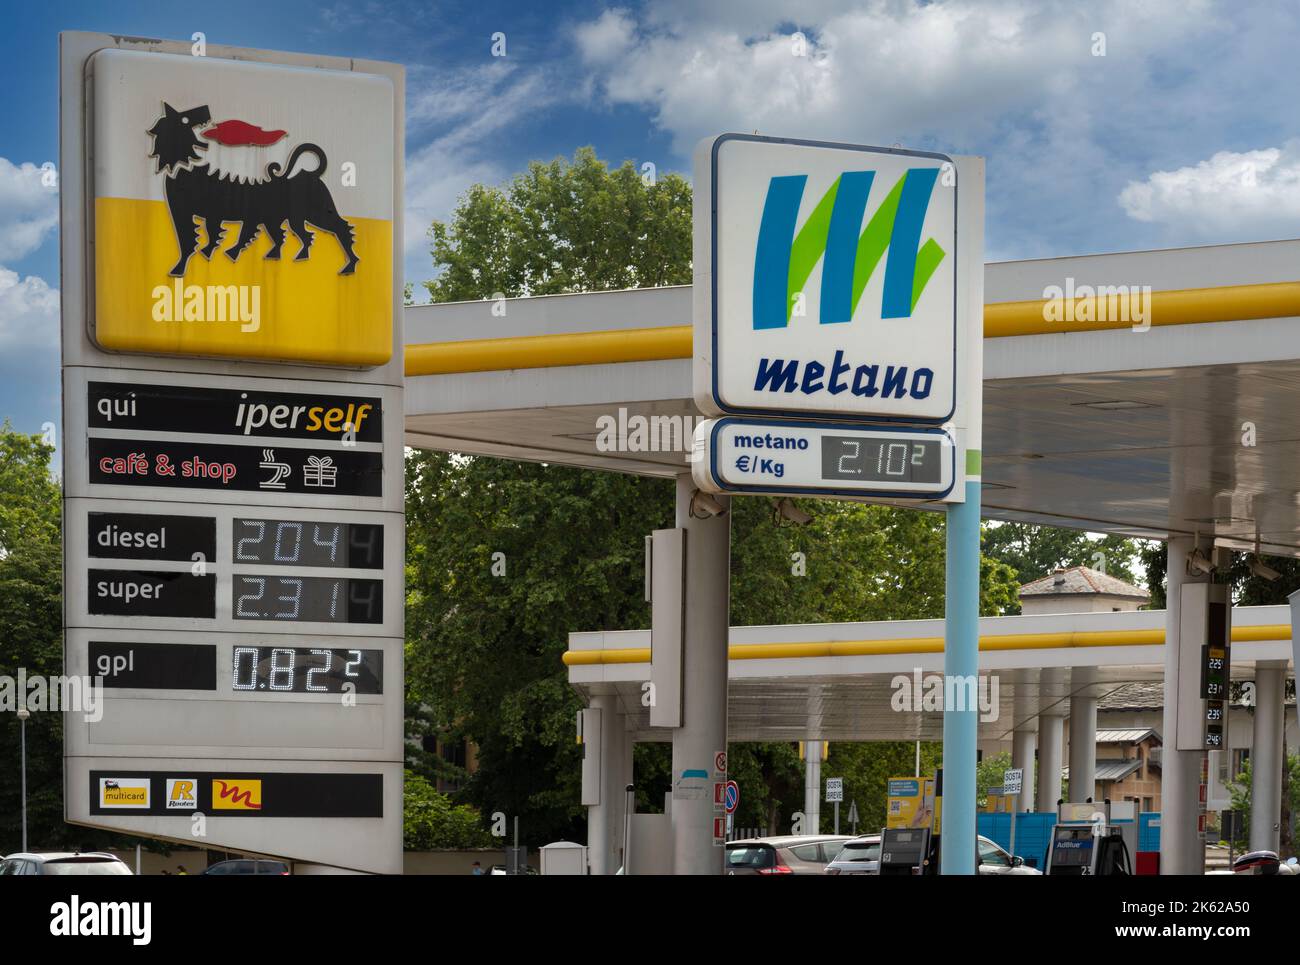 Cuneo, Italie, - 27 juin 2022: Logo ENI avec affichage du prix du carburant et panneau Metano (méthane) dans la station-service Eni, c'est une compagnie pétrolière italienne mondew Banque D'Images